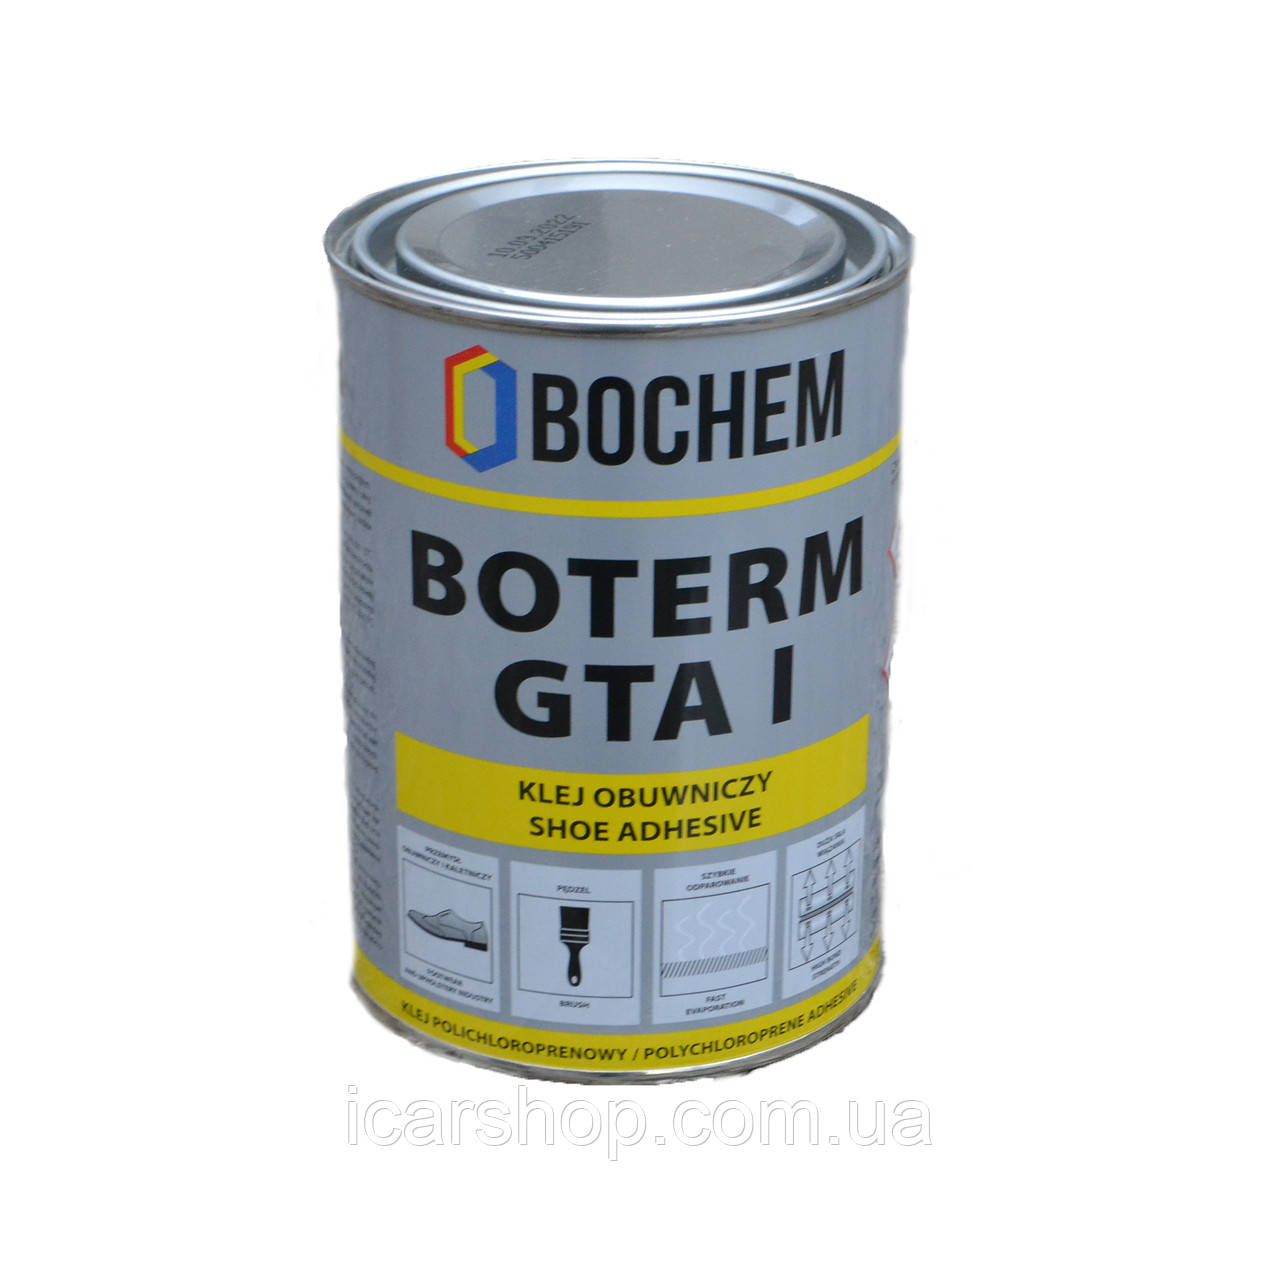 Клей автомобільний для тканини, шкіри/шкірозамінника салону авто Bochem Boterm GTA I 0,8 кг. наіріт